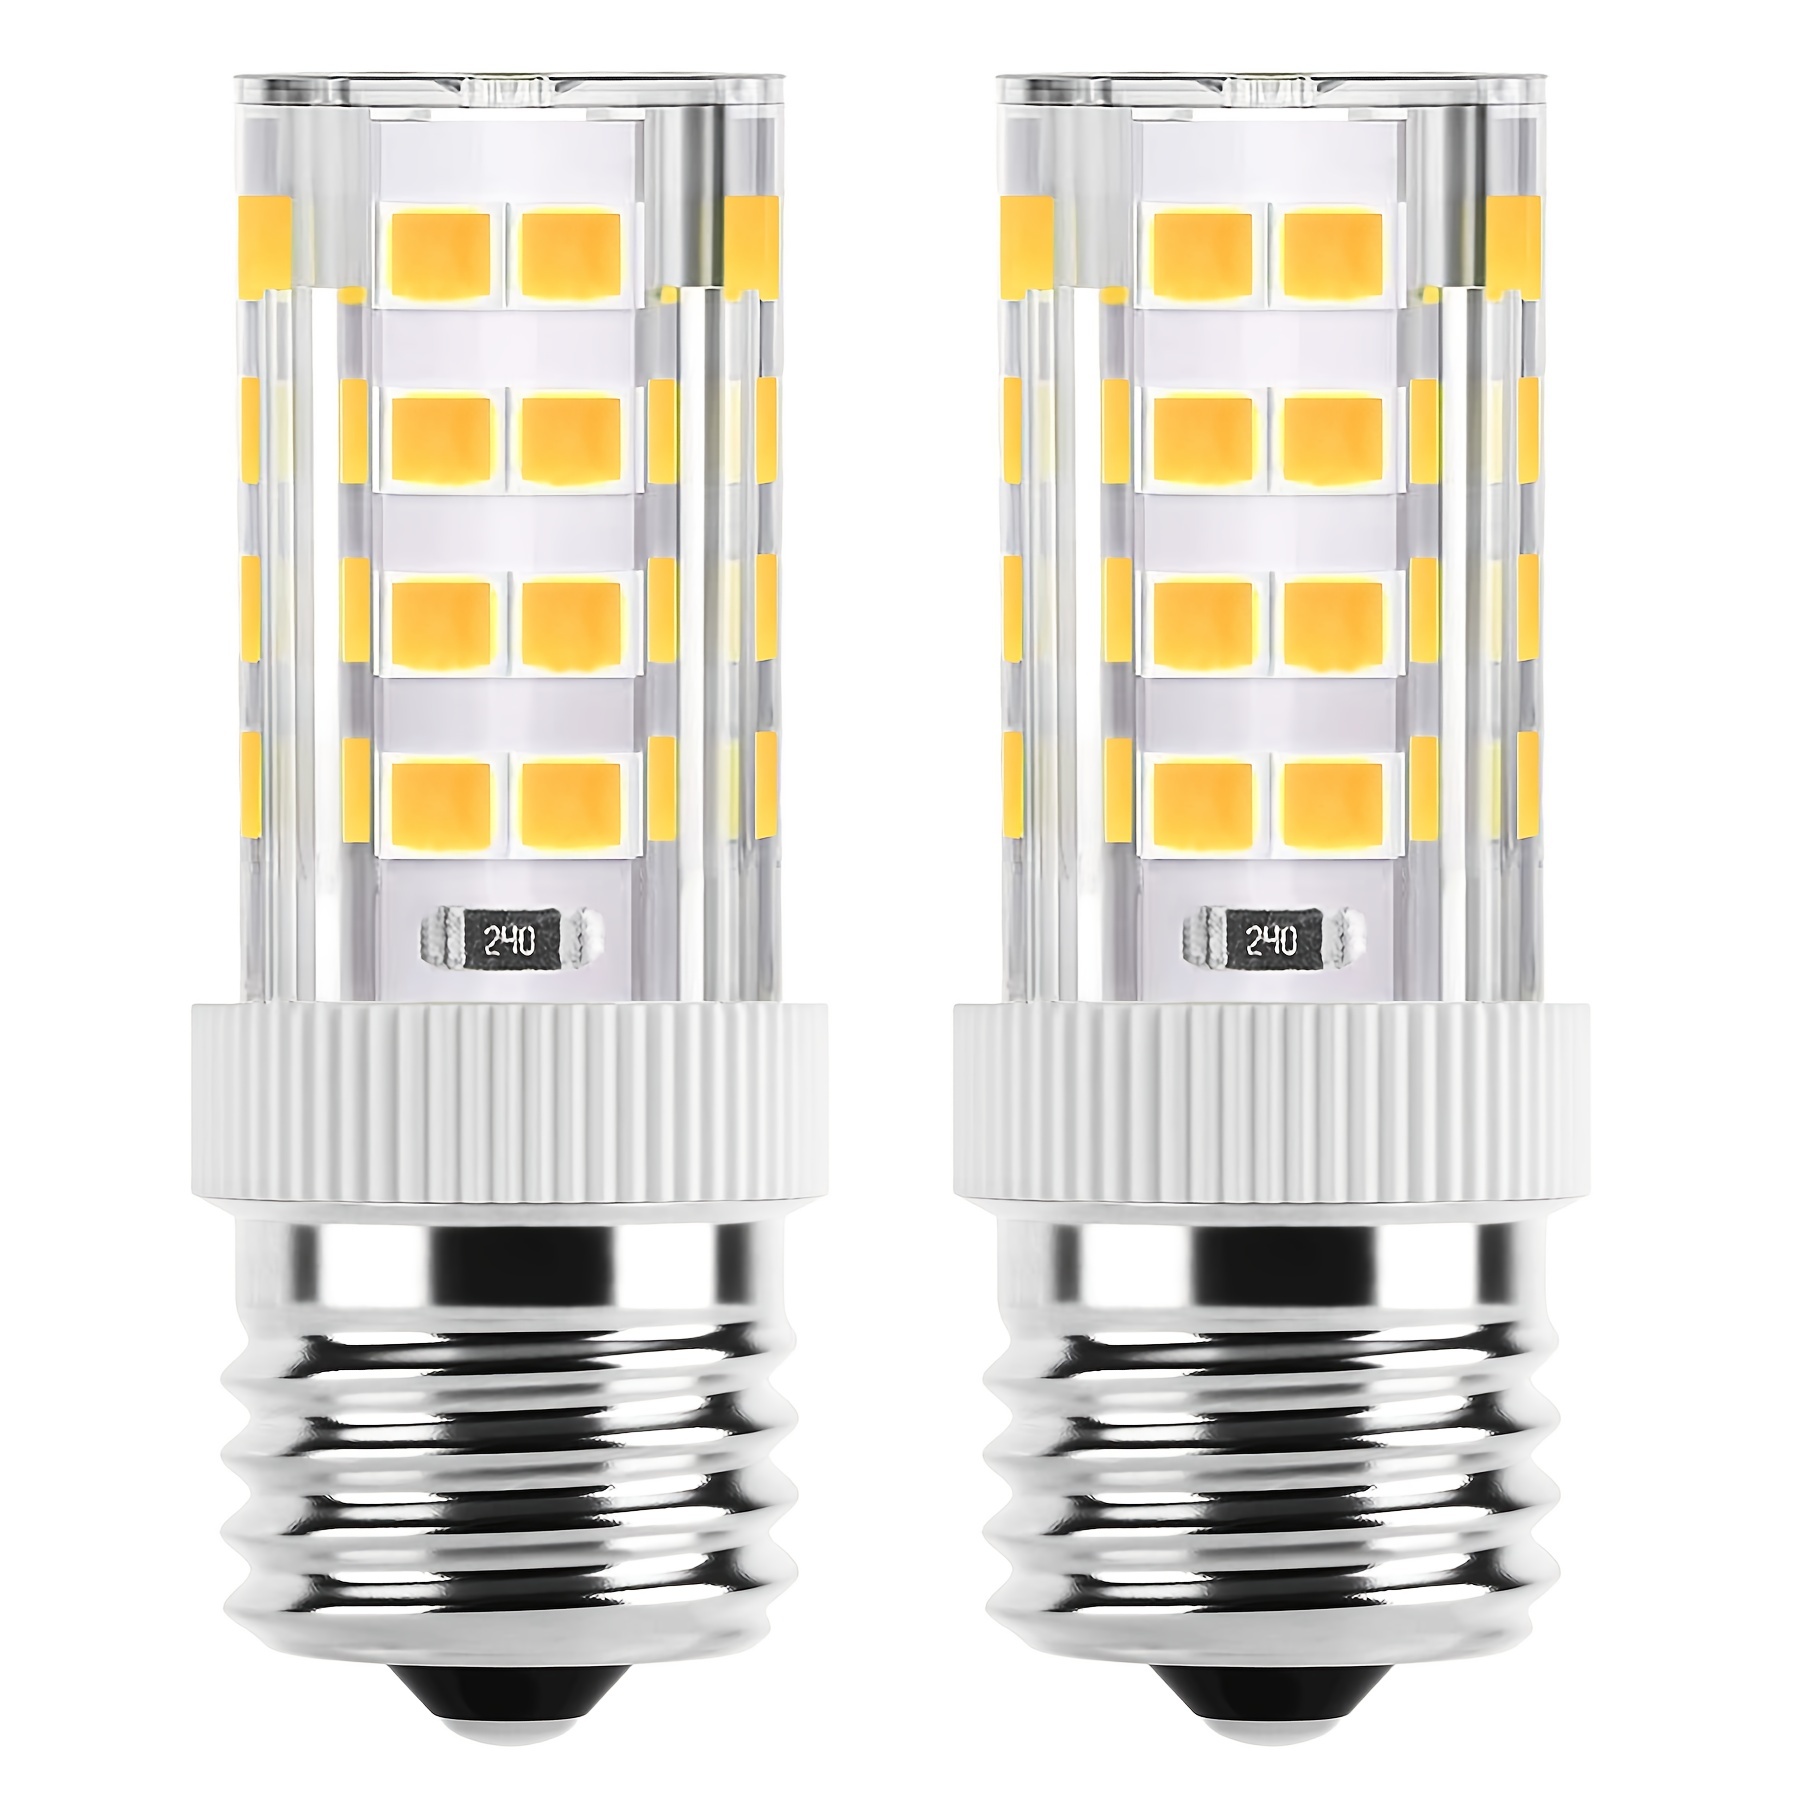 Lot de 3 Ampoules LED E27 4W Filament Equiv 40W